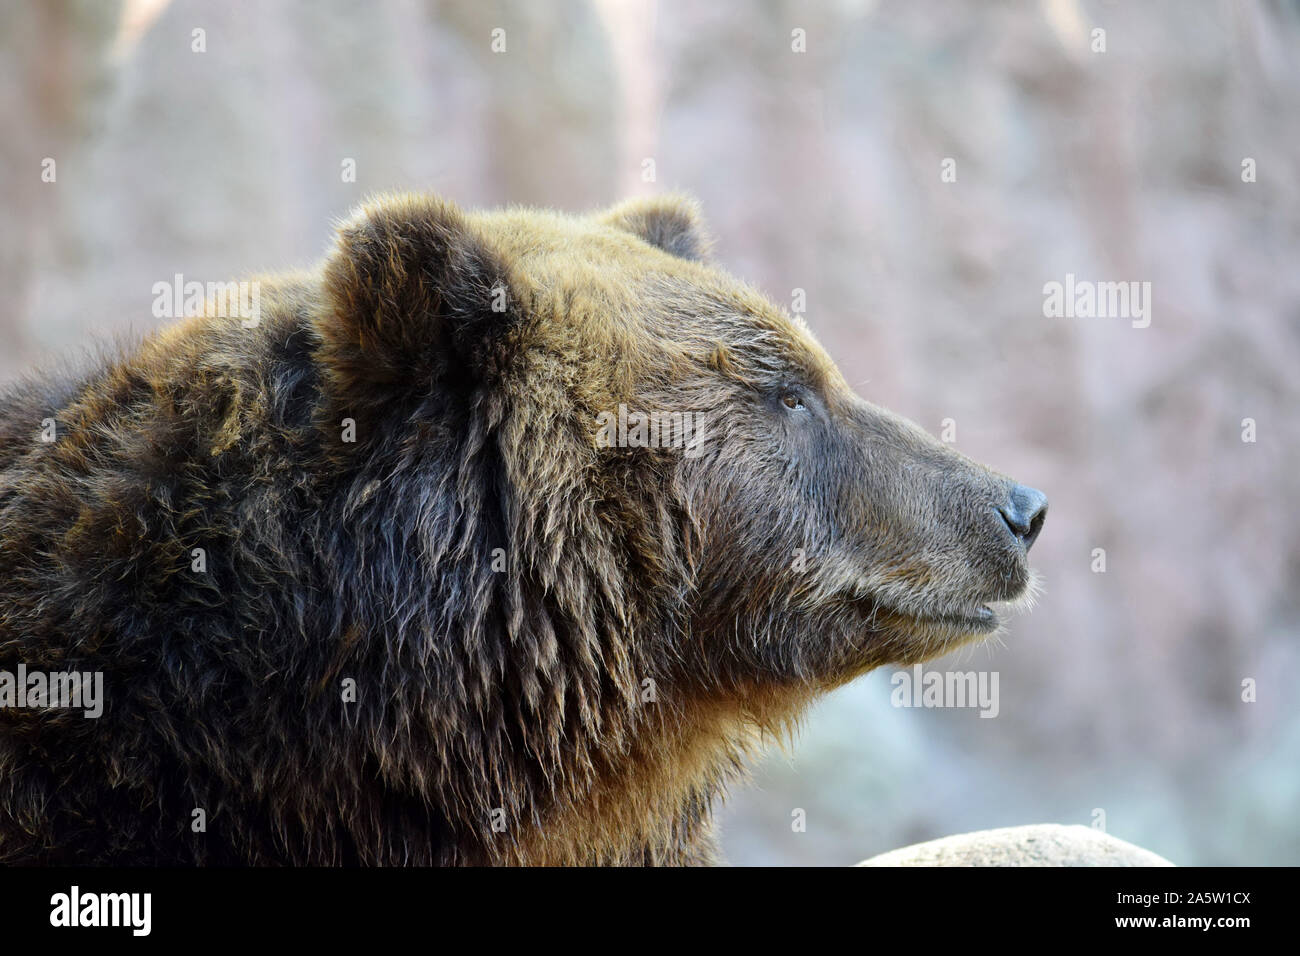 Capo in prossimità di orso bruno Vista laterale Foto Stock